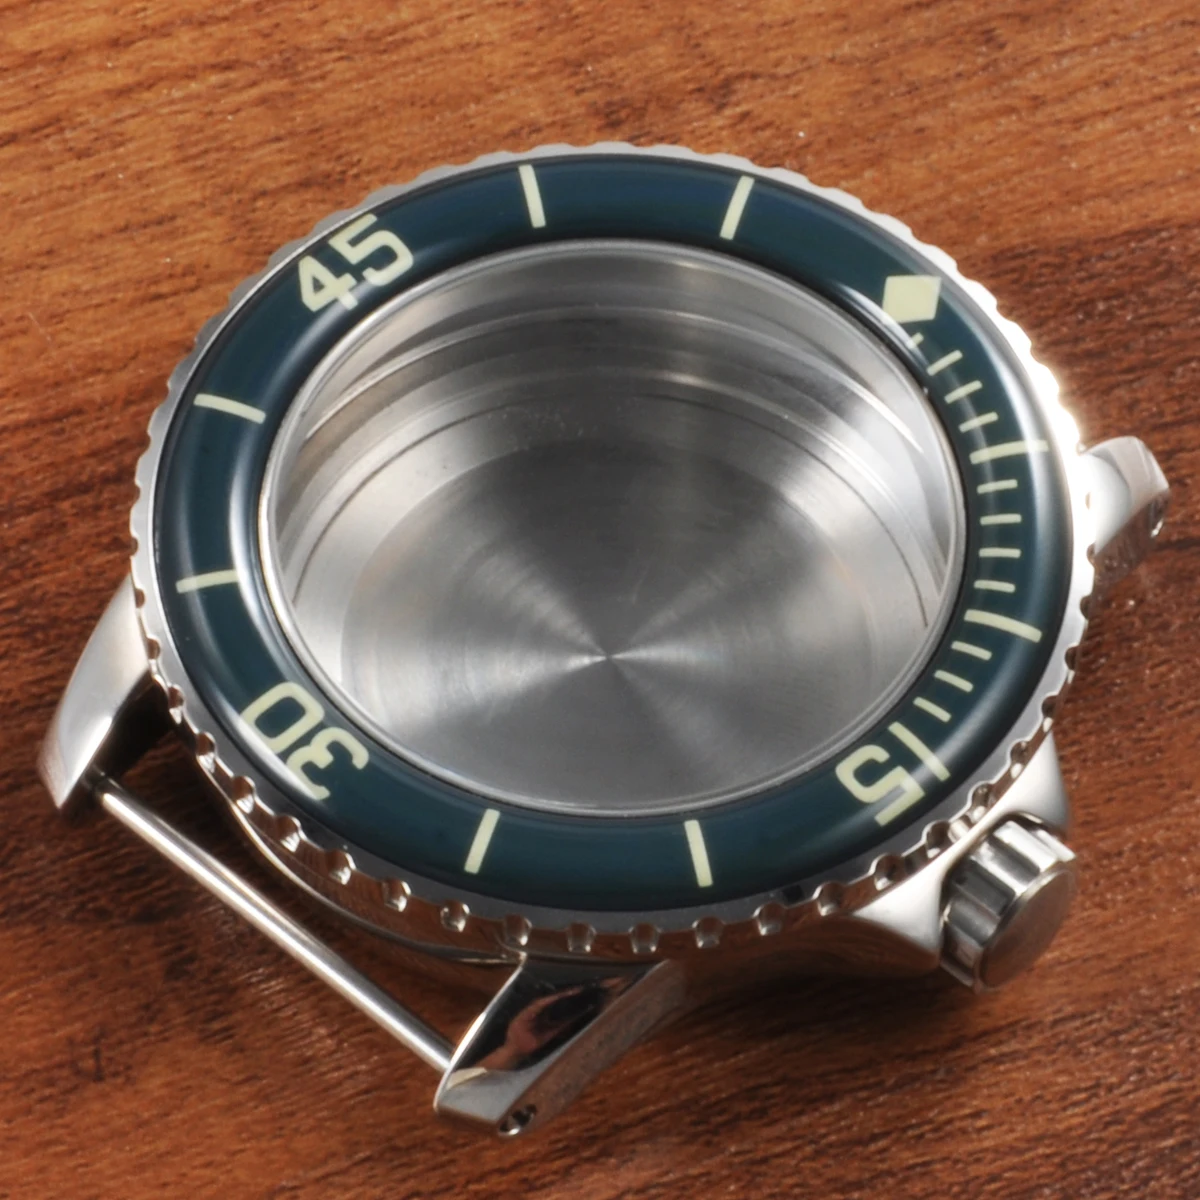 Запчасти для часов, 45 мм асептический чехол зеленый круг 316L SS fit ETA2836 Miyota 821A/8215 механические часы для мужчин - Цвет: Green